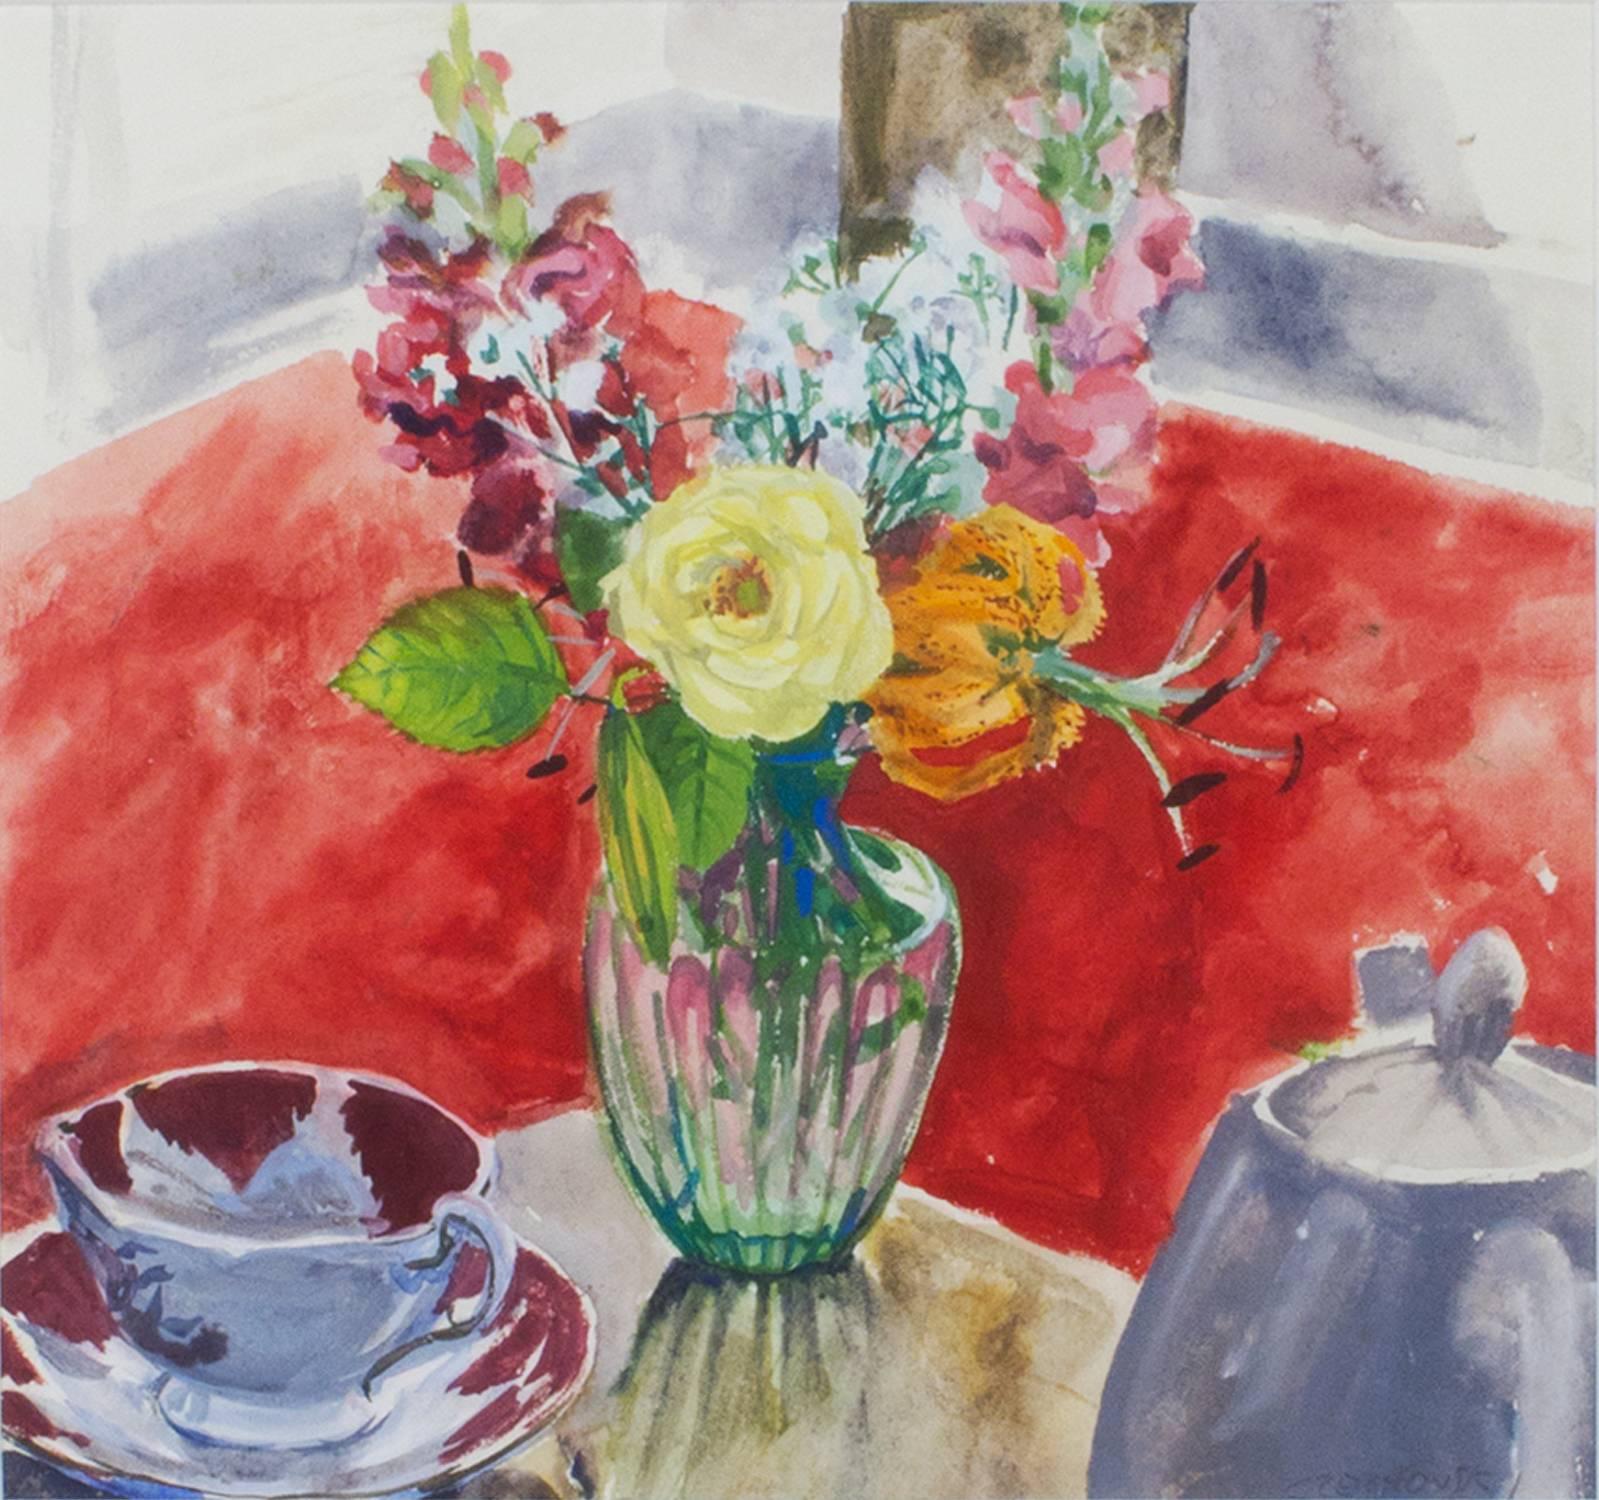 "Blumenvase und Teetasse" ist ein Original-Aquarell von Alicia Czechowski. Das Gemälde zeigt einen zum Tee gedeckten Tisch vor einem roten Hintergrund, der möglicherweise an Meisterwerke der modernen Kunst wie das "Rote Zimmer" von Henri Matisse